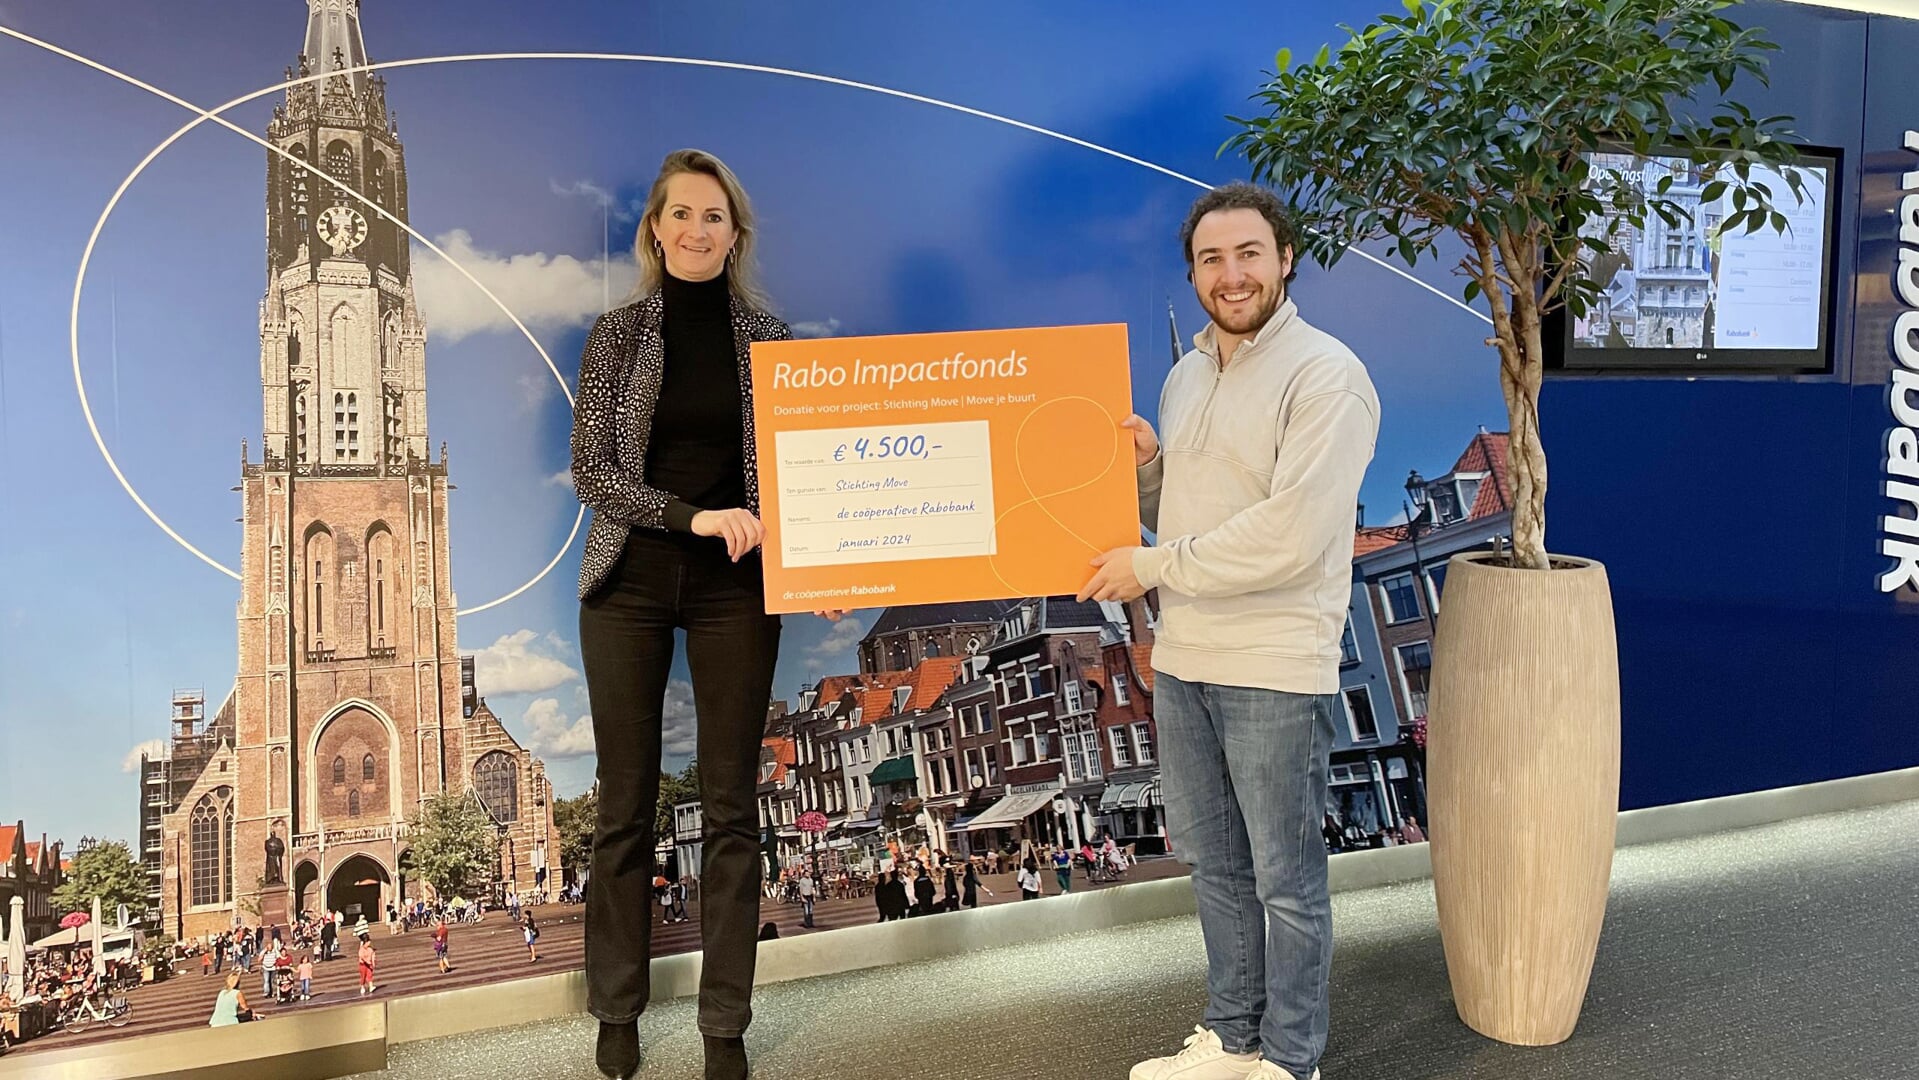 Onlangs ontving Stichting Move Delft een donatie van maar liefst 4500 euro vanuit het Rabo Impactfonds!